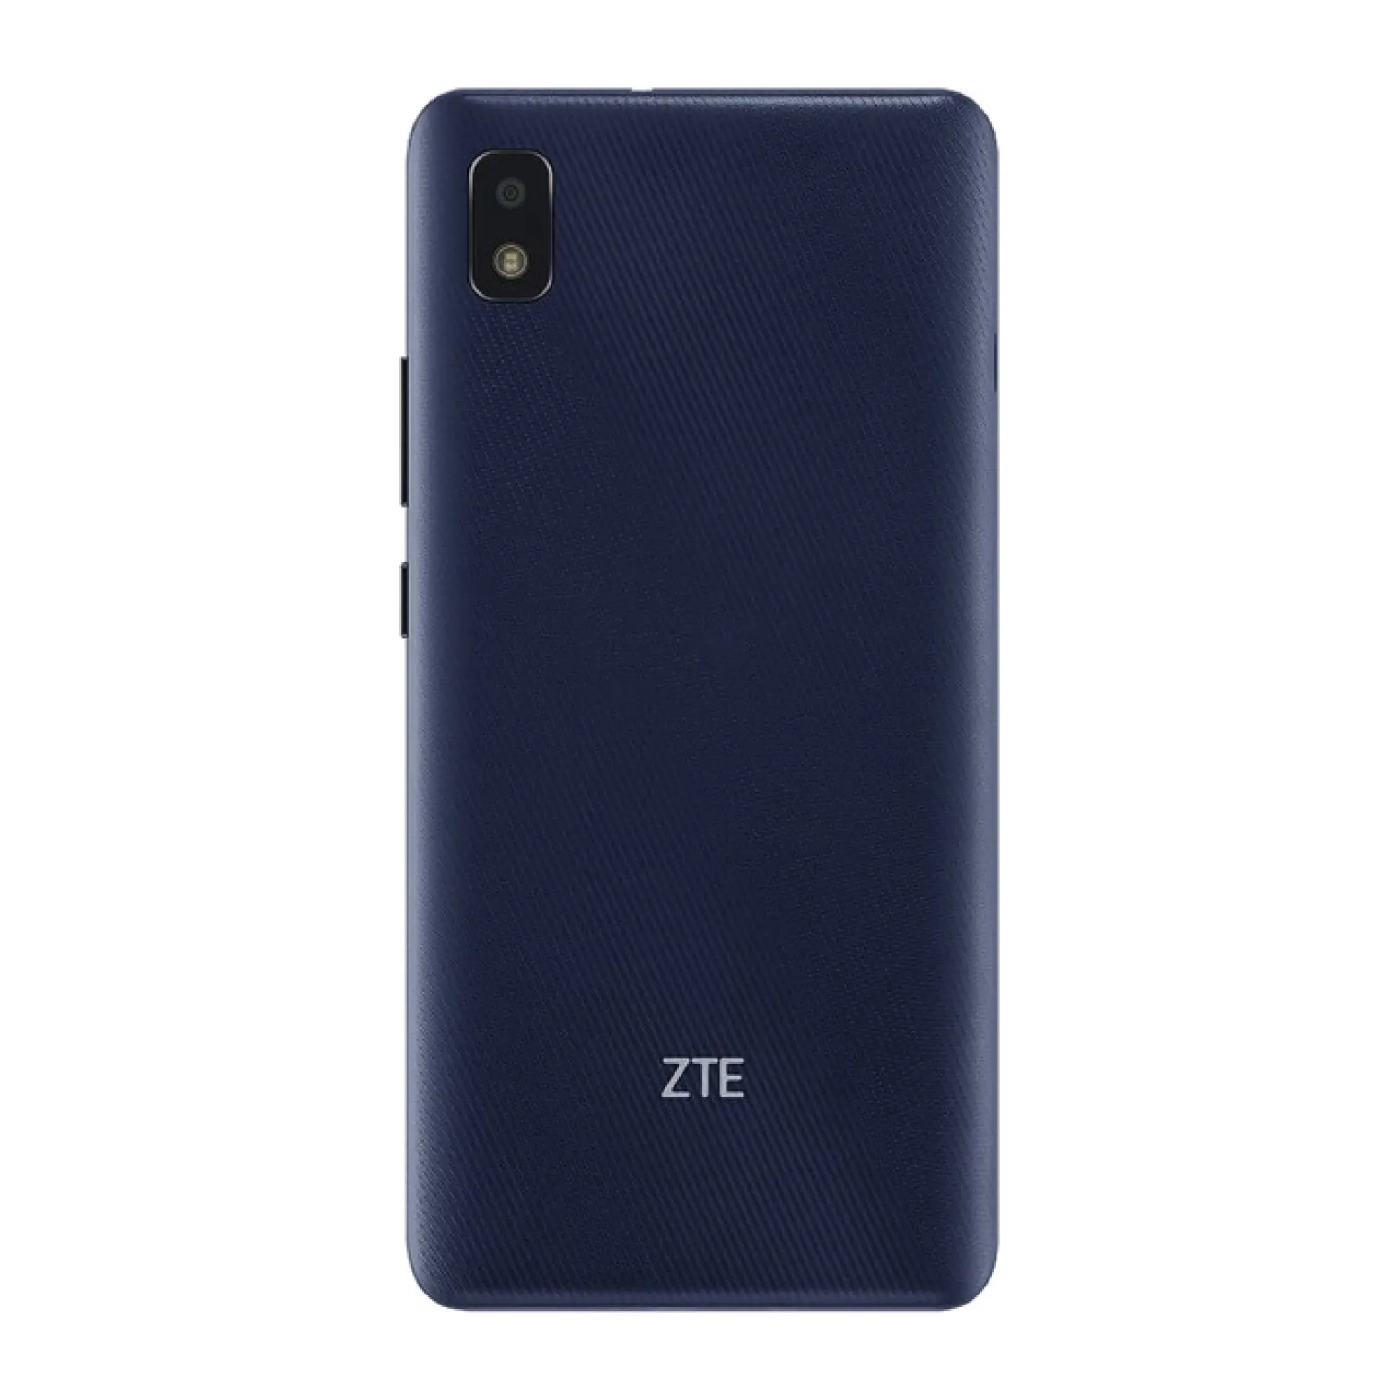 Купить Смартфон ZTE Blade L210 1/32GB Blue (661250) - фото 3